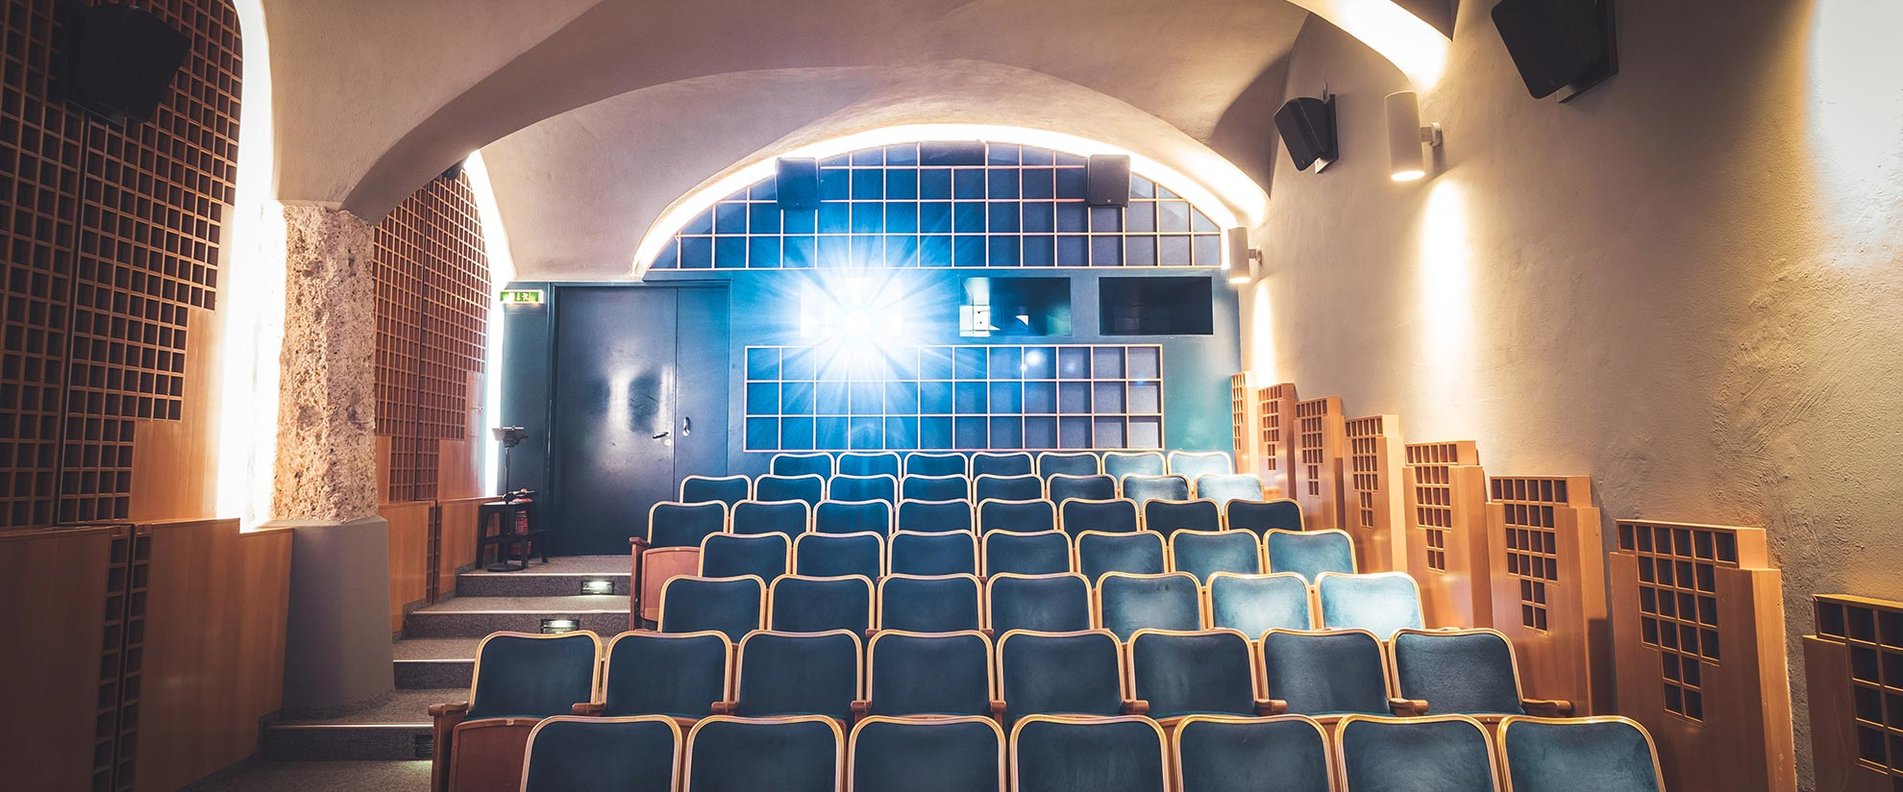 Filmkulturzentrum Das Kino in der Altstadt Salzburg | © Das Kino / Patrick Daxenbichler